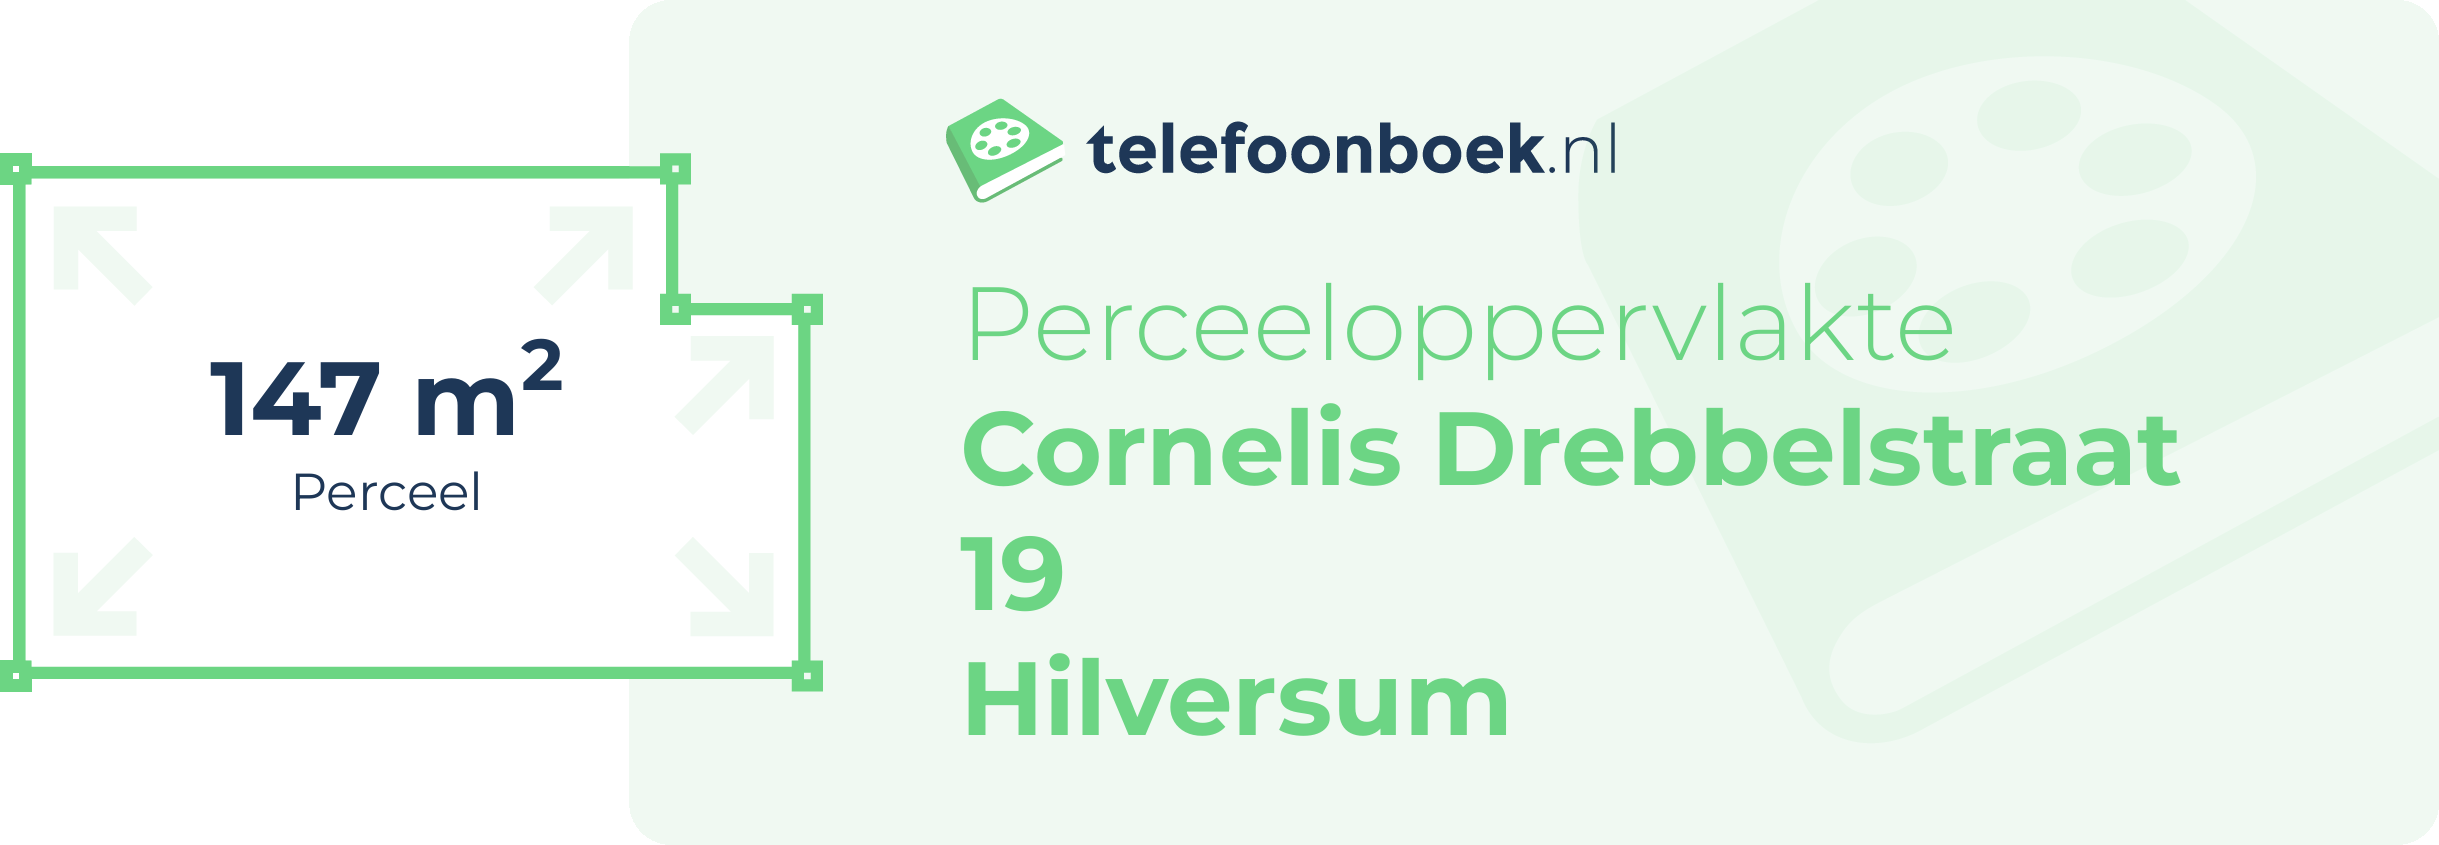 Perceeloppervlakte Cornelis Drebbelstraat 19 Hilversum